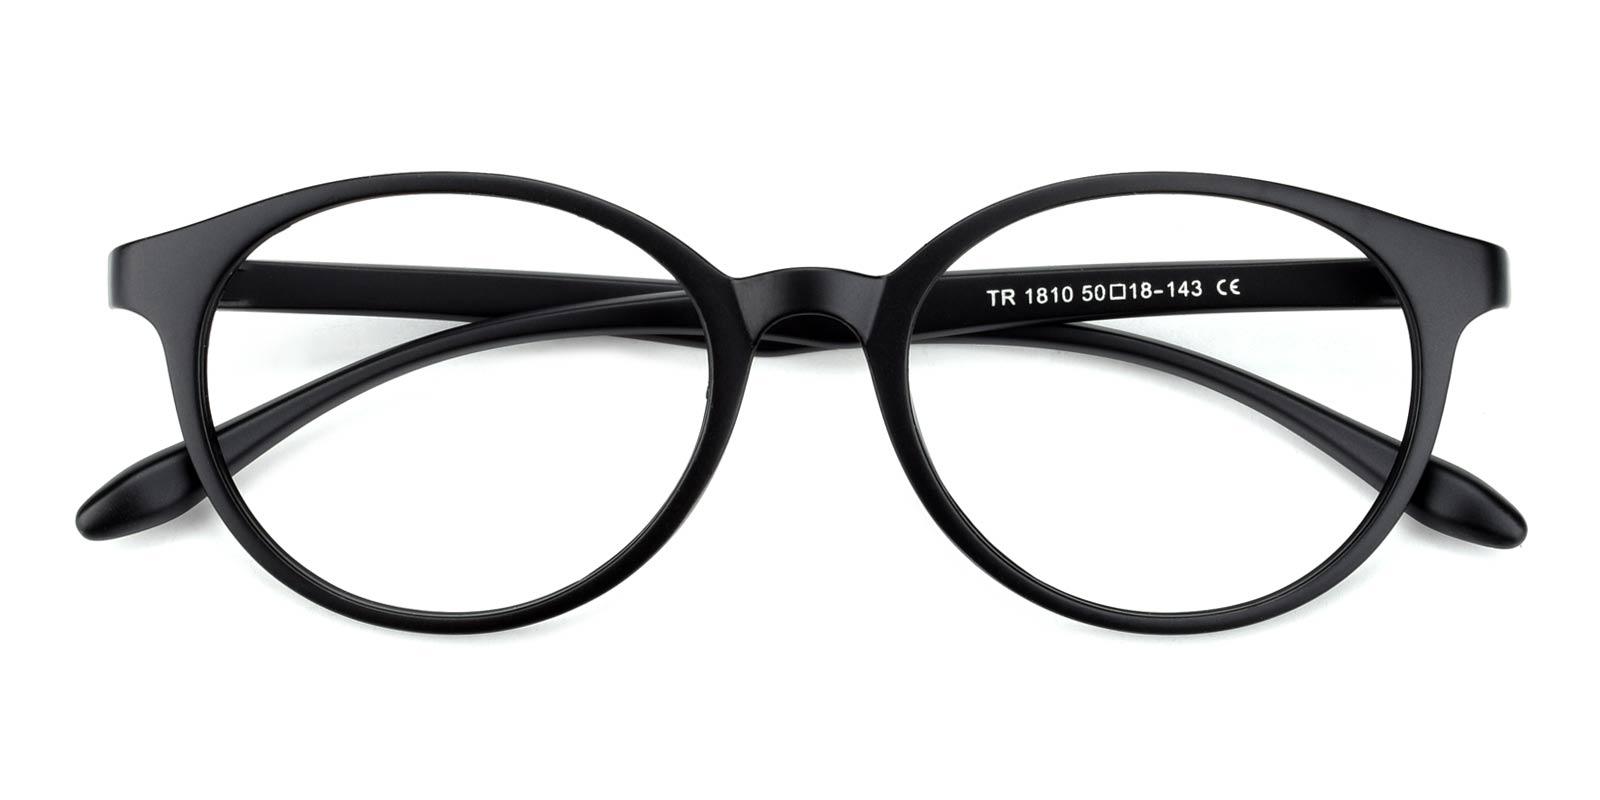 Howar-Black-Oval-TR-Eyeglasses-detail